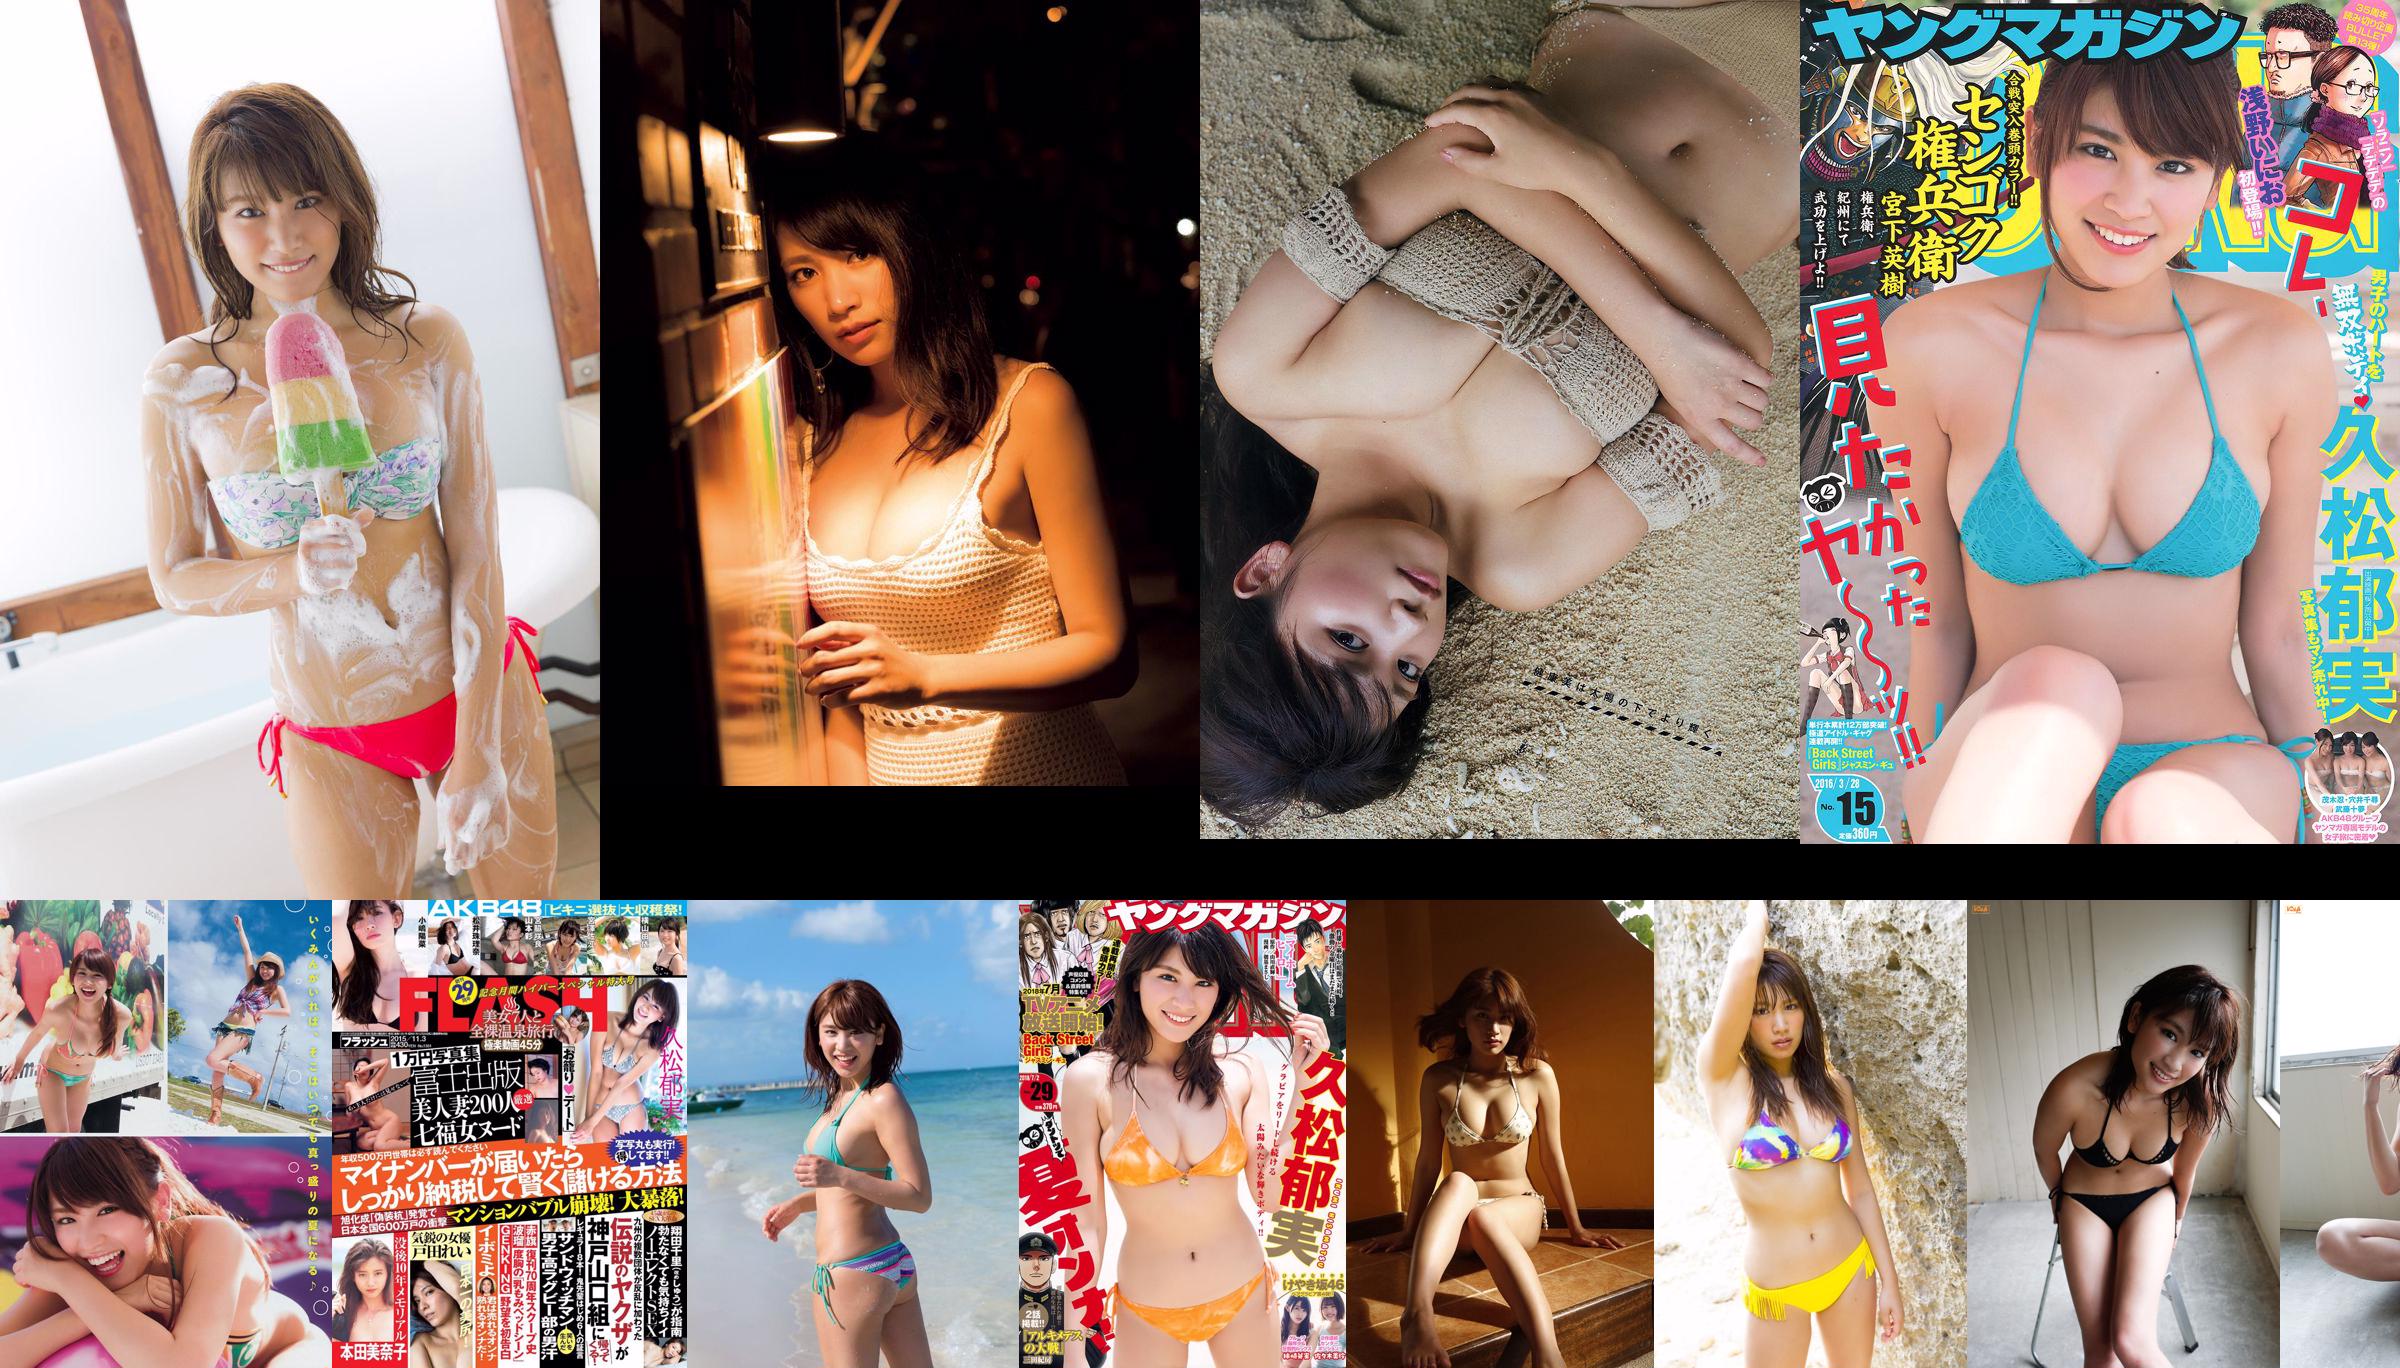 久松鬱純白石麥子Arisa Komiya Misumi Shiochi Aya Kawasaki Nogizaka46 [Weekly Playboy] 2017 No.08照片 No.9c90fb 第12頁